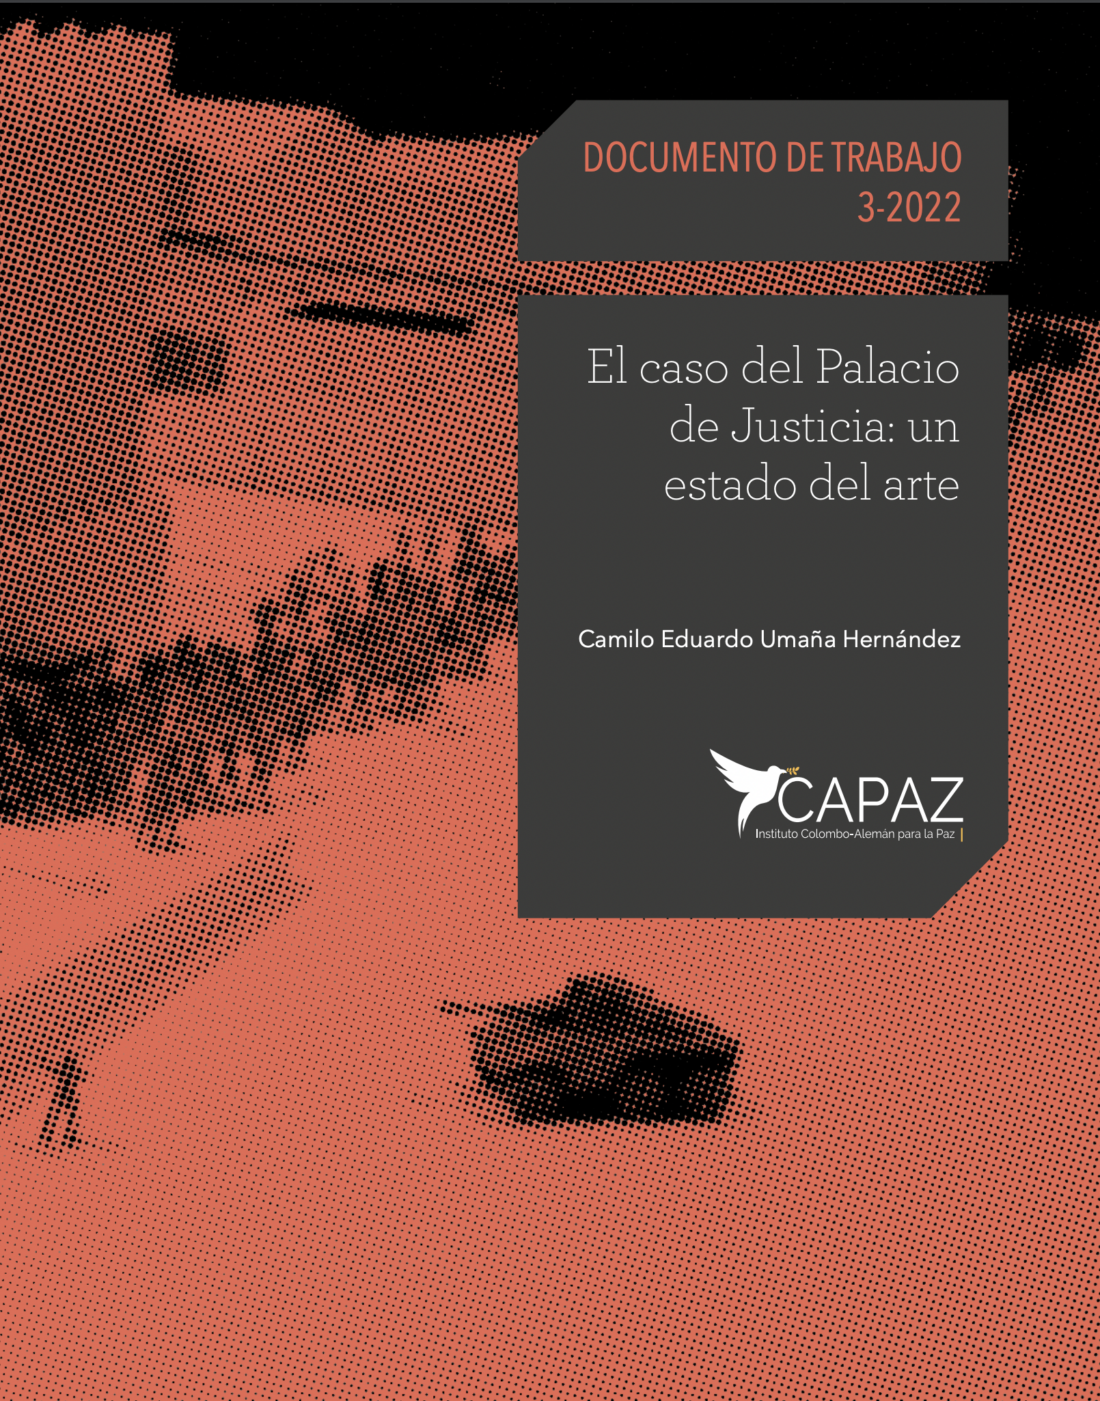 Portada documento de trabajo CAPAZ sobre investigación Palacio de Justicia